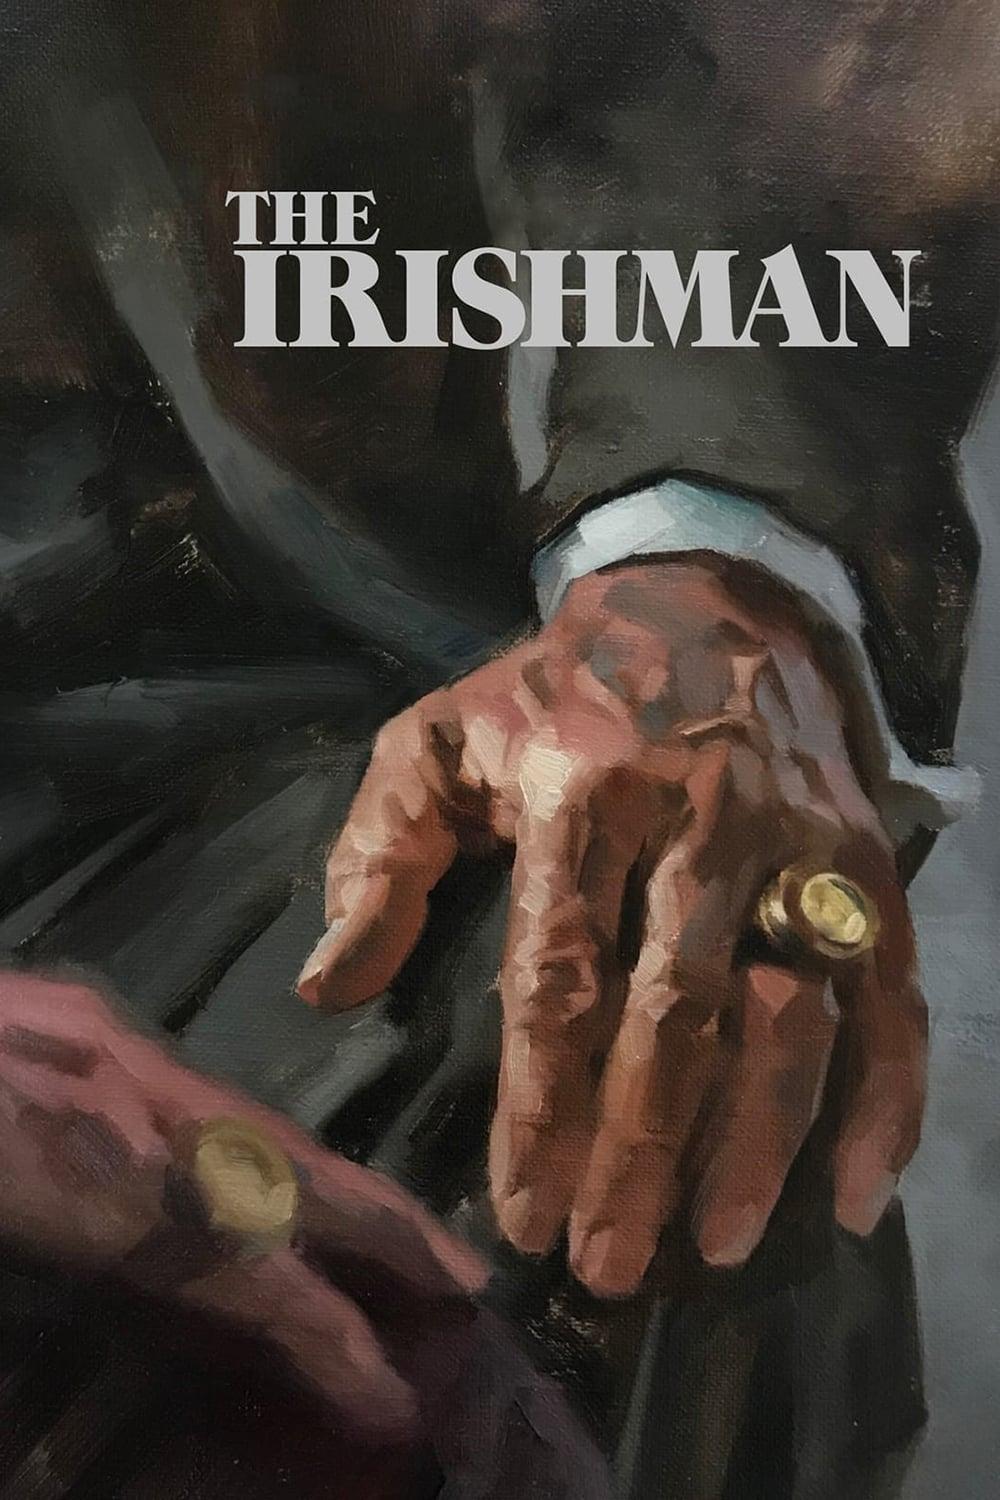 The Irishman poster